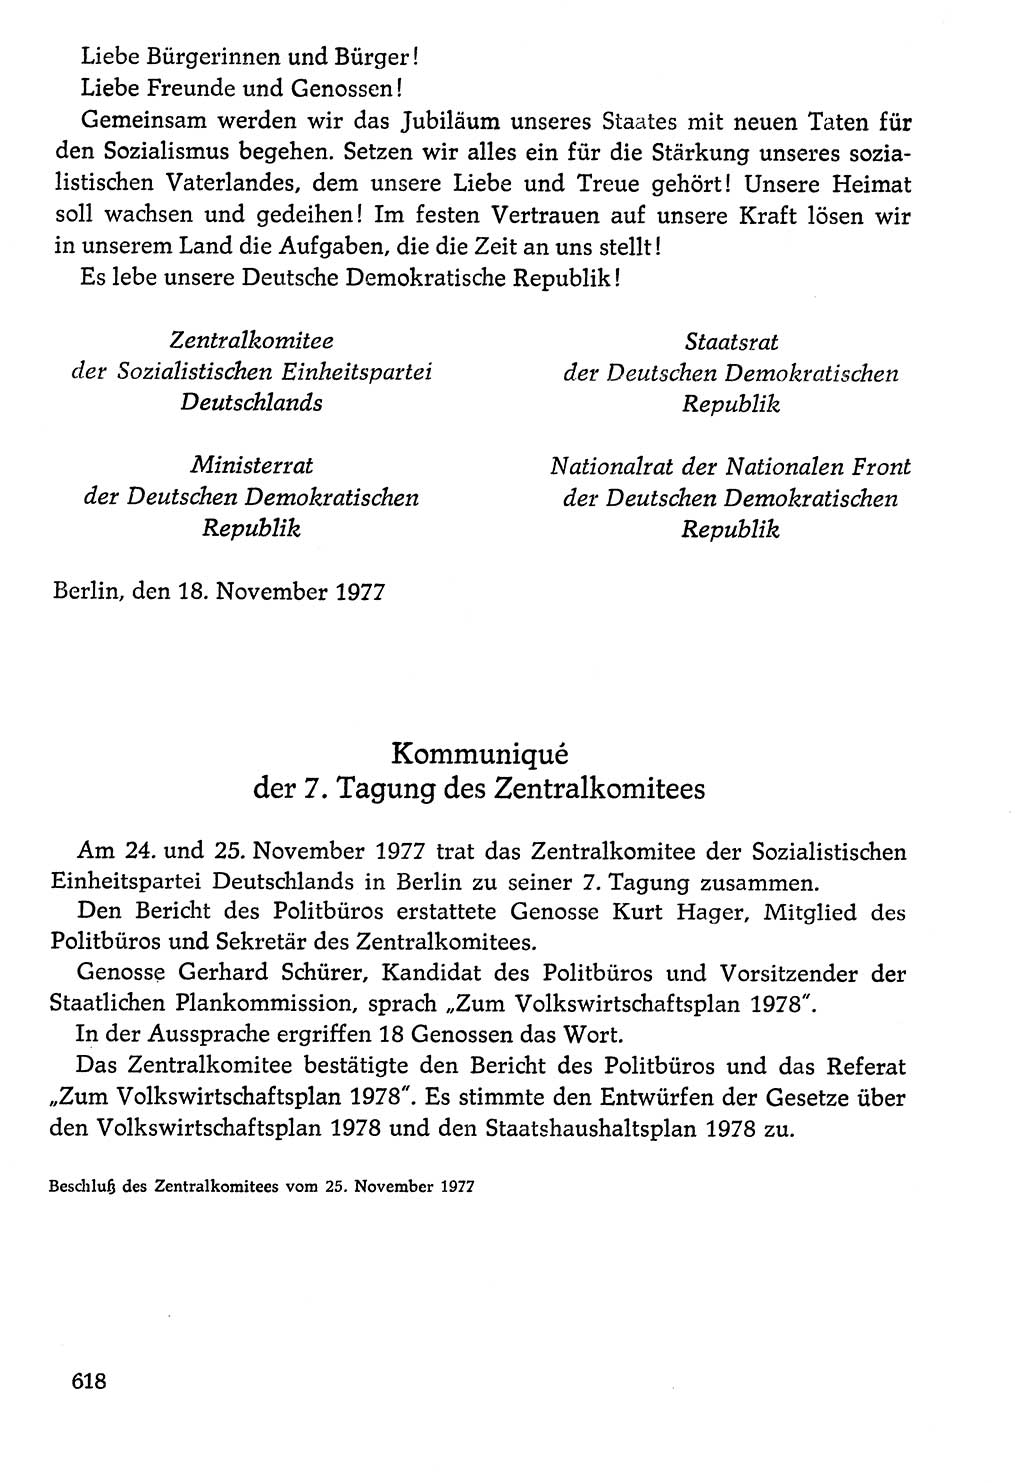 Dokumente der Sozialistischen Einheitspartei Deutschlands (SED) [Deutsche Demokratische Republik (DDR)] 1976-1977, Seite 618 (Dok. SED DDR 1976-1977, S. 618)